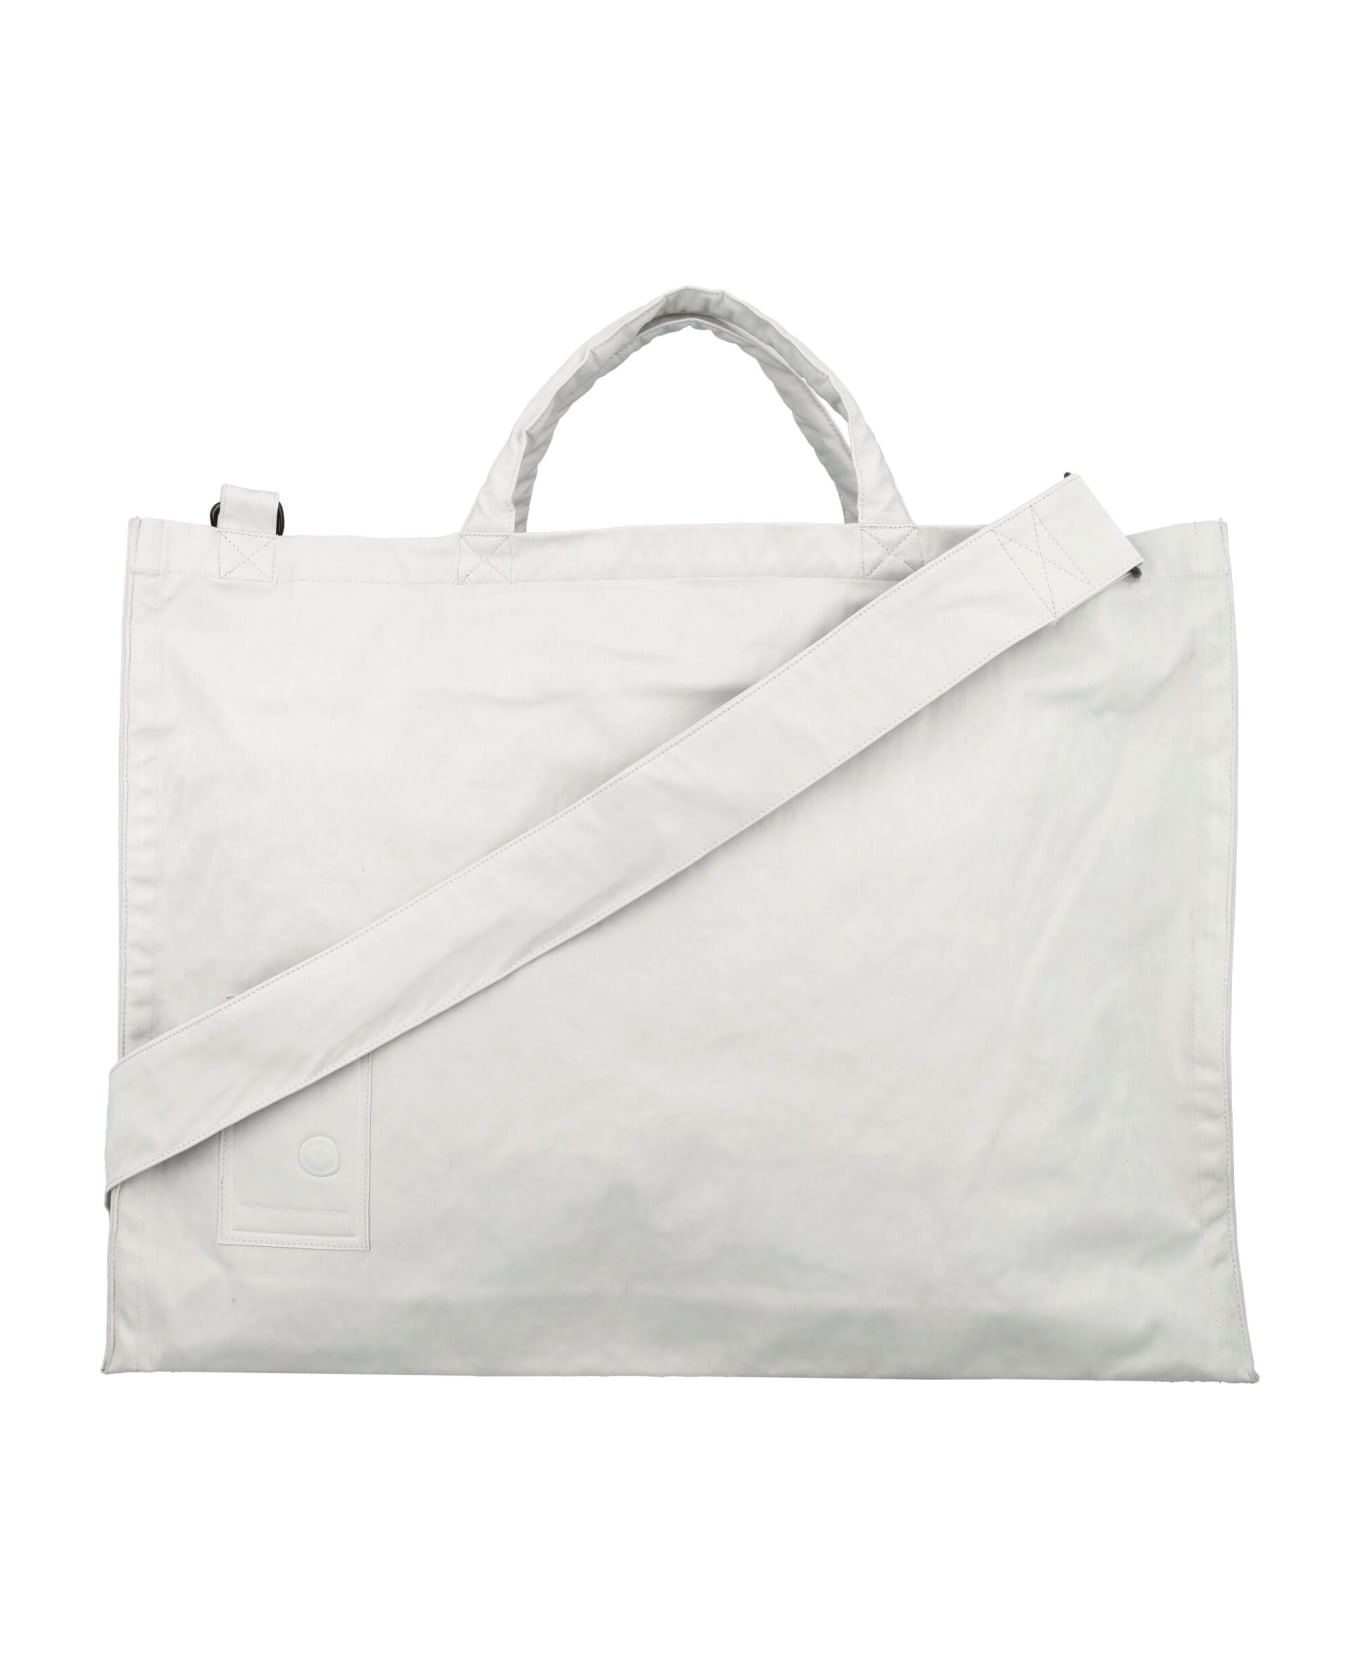 Ten C Shoulder Bag - SILVER GREY